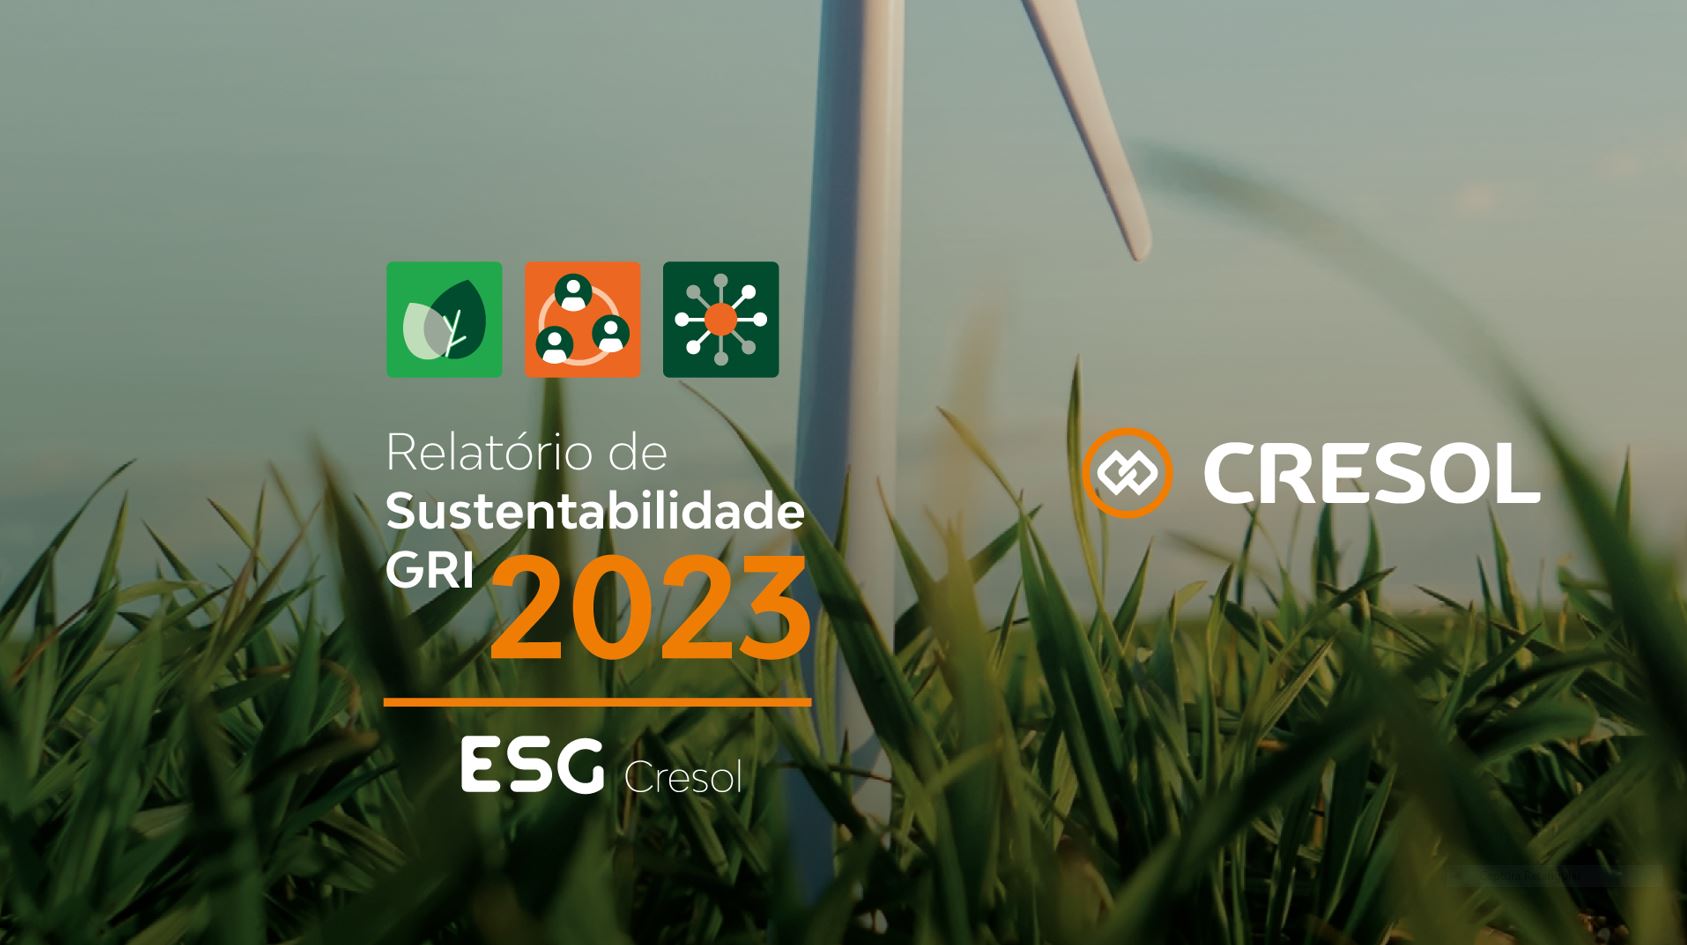 CRÉDITO: Relatório de Sustentabilidade da Cresol mostra expansão de indicadores e três novos ODS 